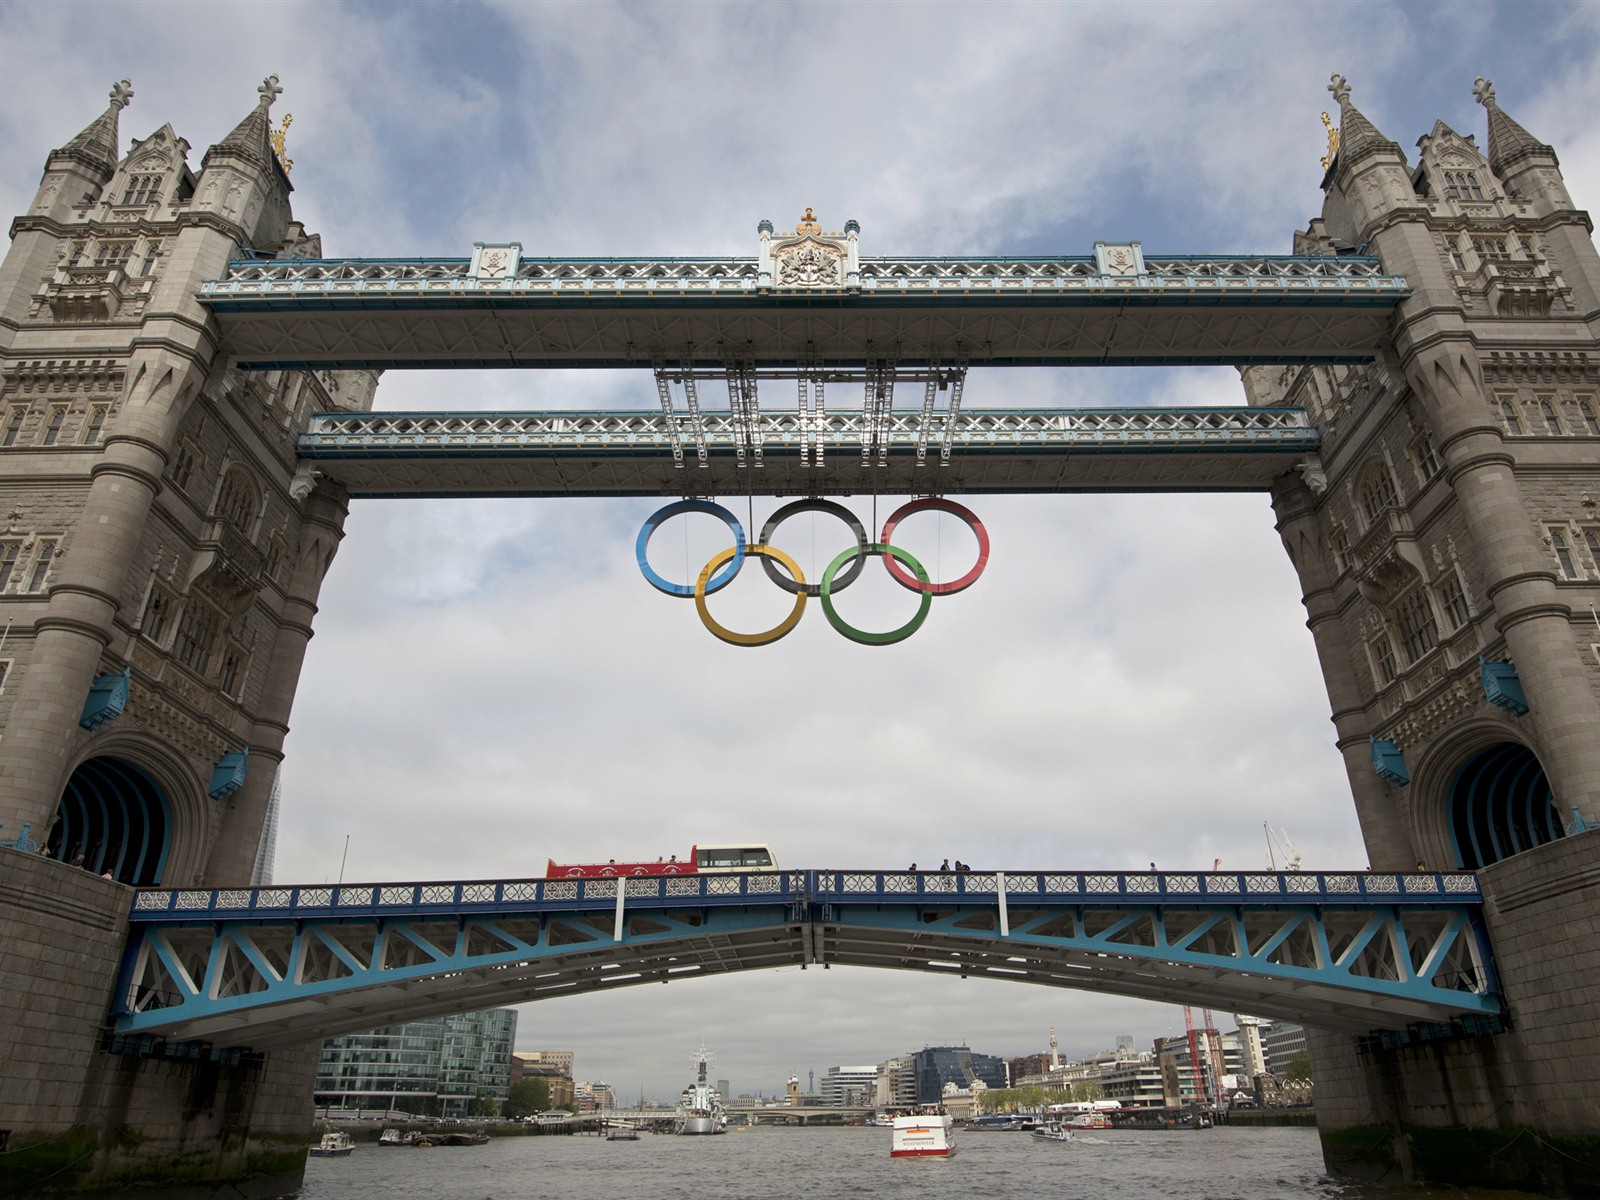 Londres 2012 Olimpiadas fondos temáticos (1) #27 - 1600x1200